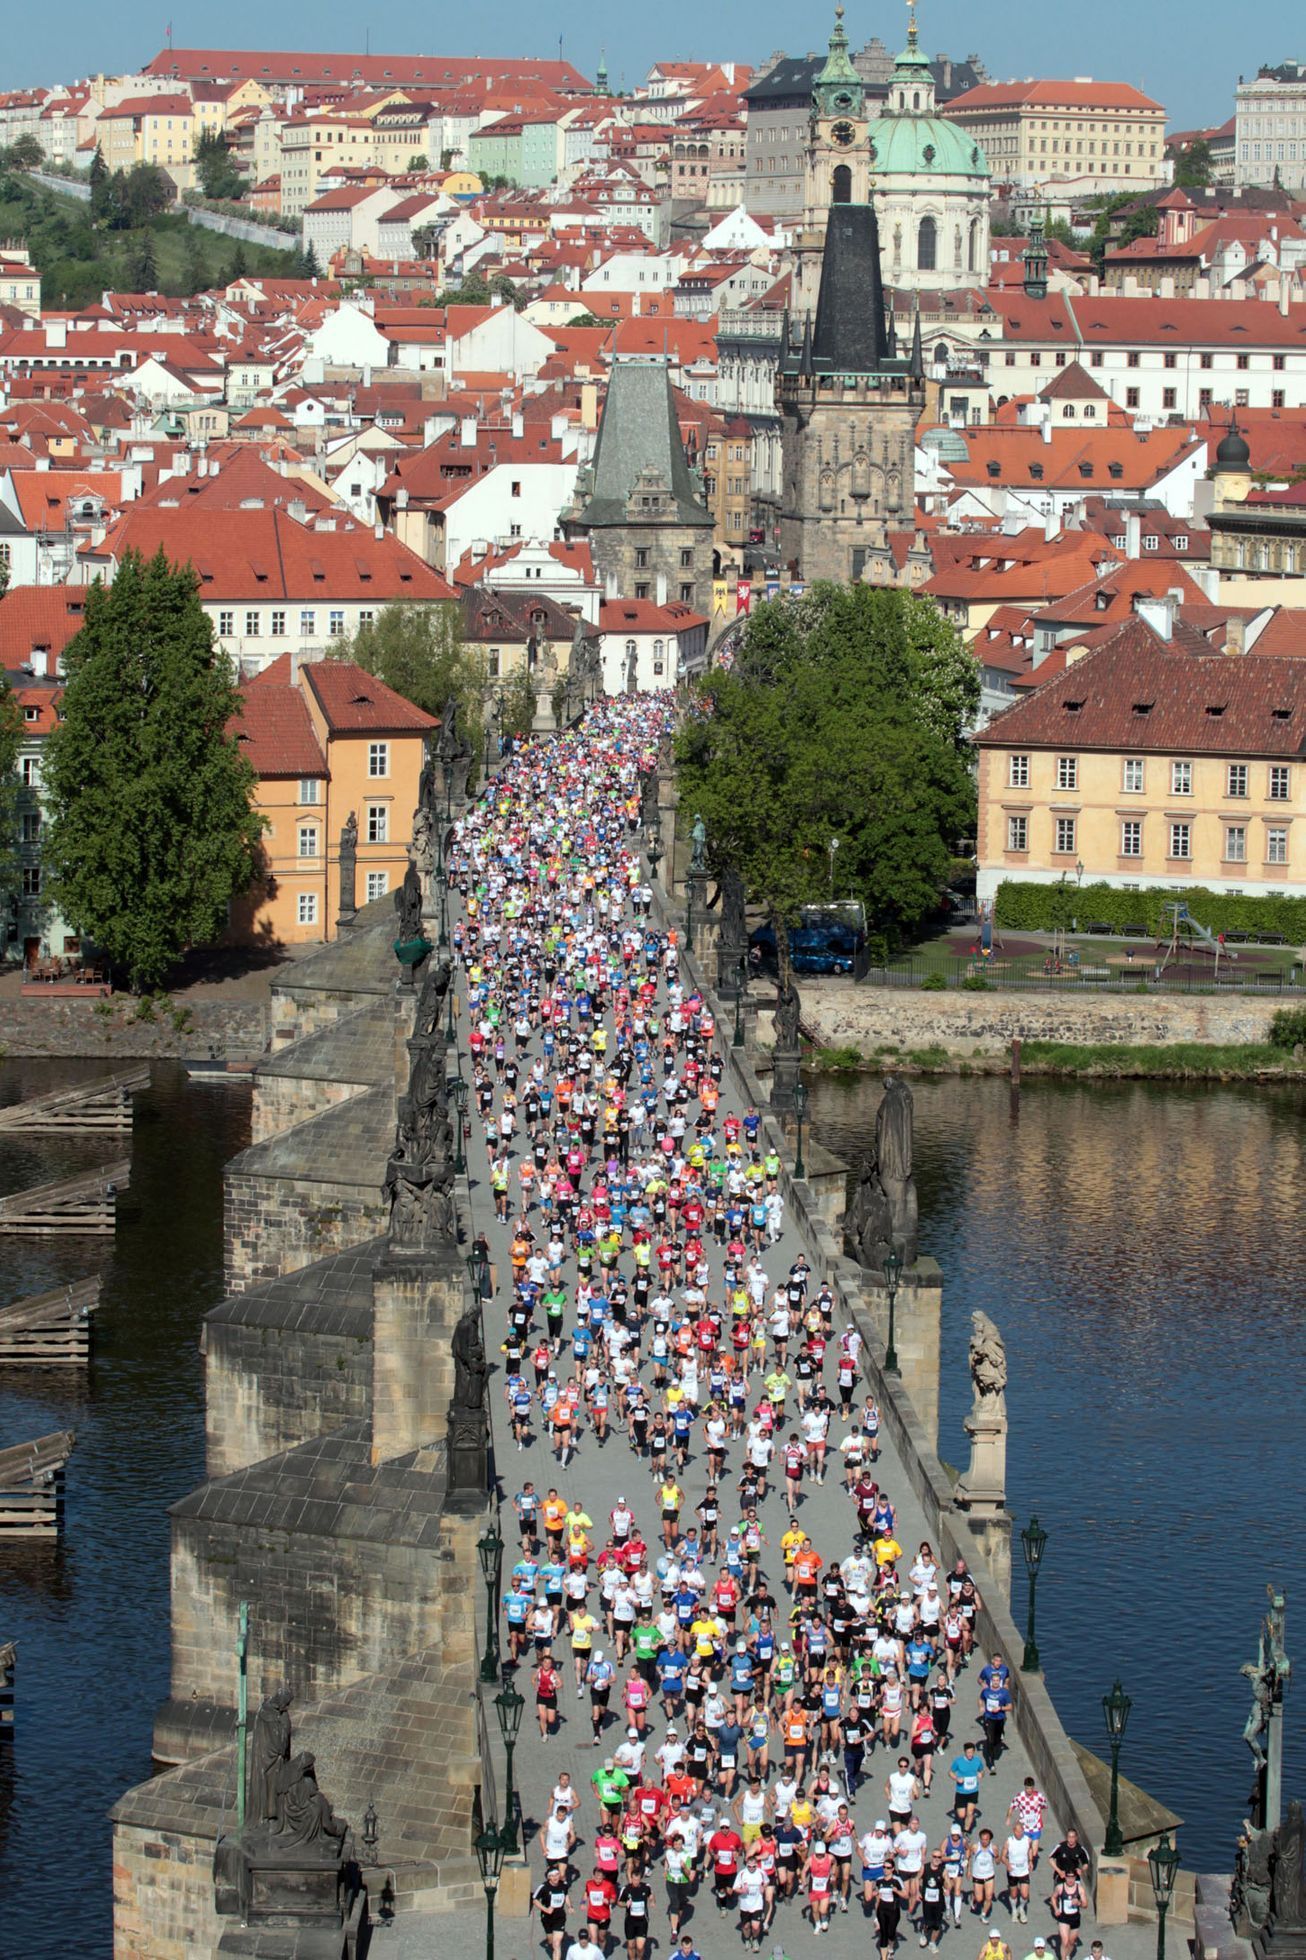 19. ročník Pražského mezinárodního maratonu.